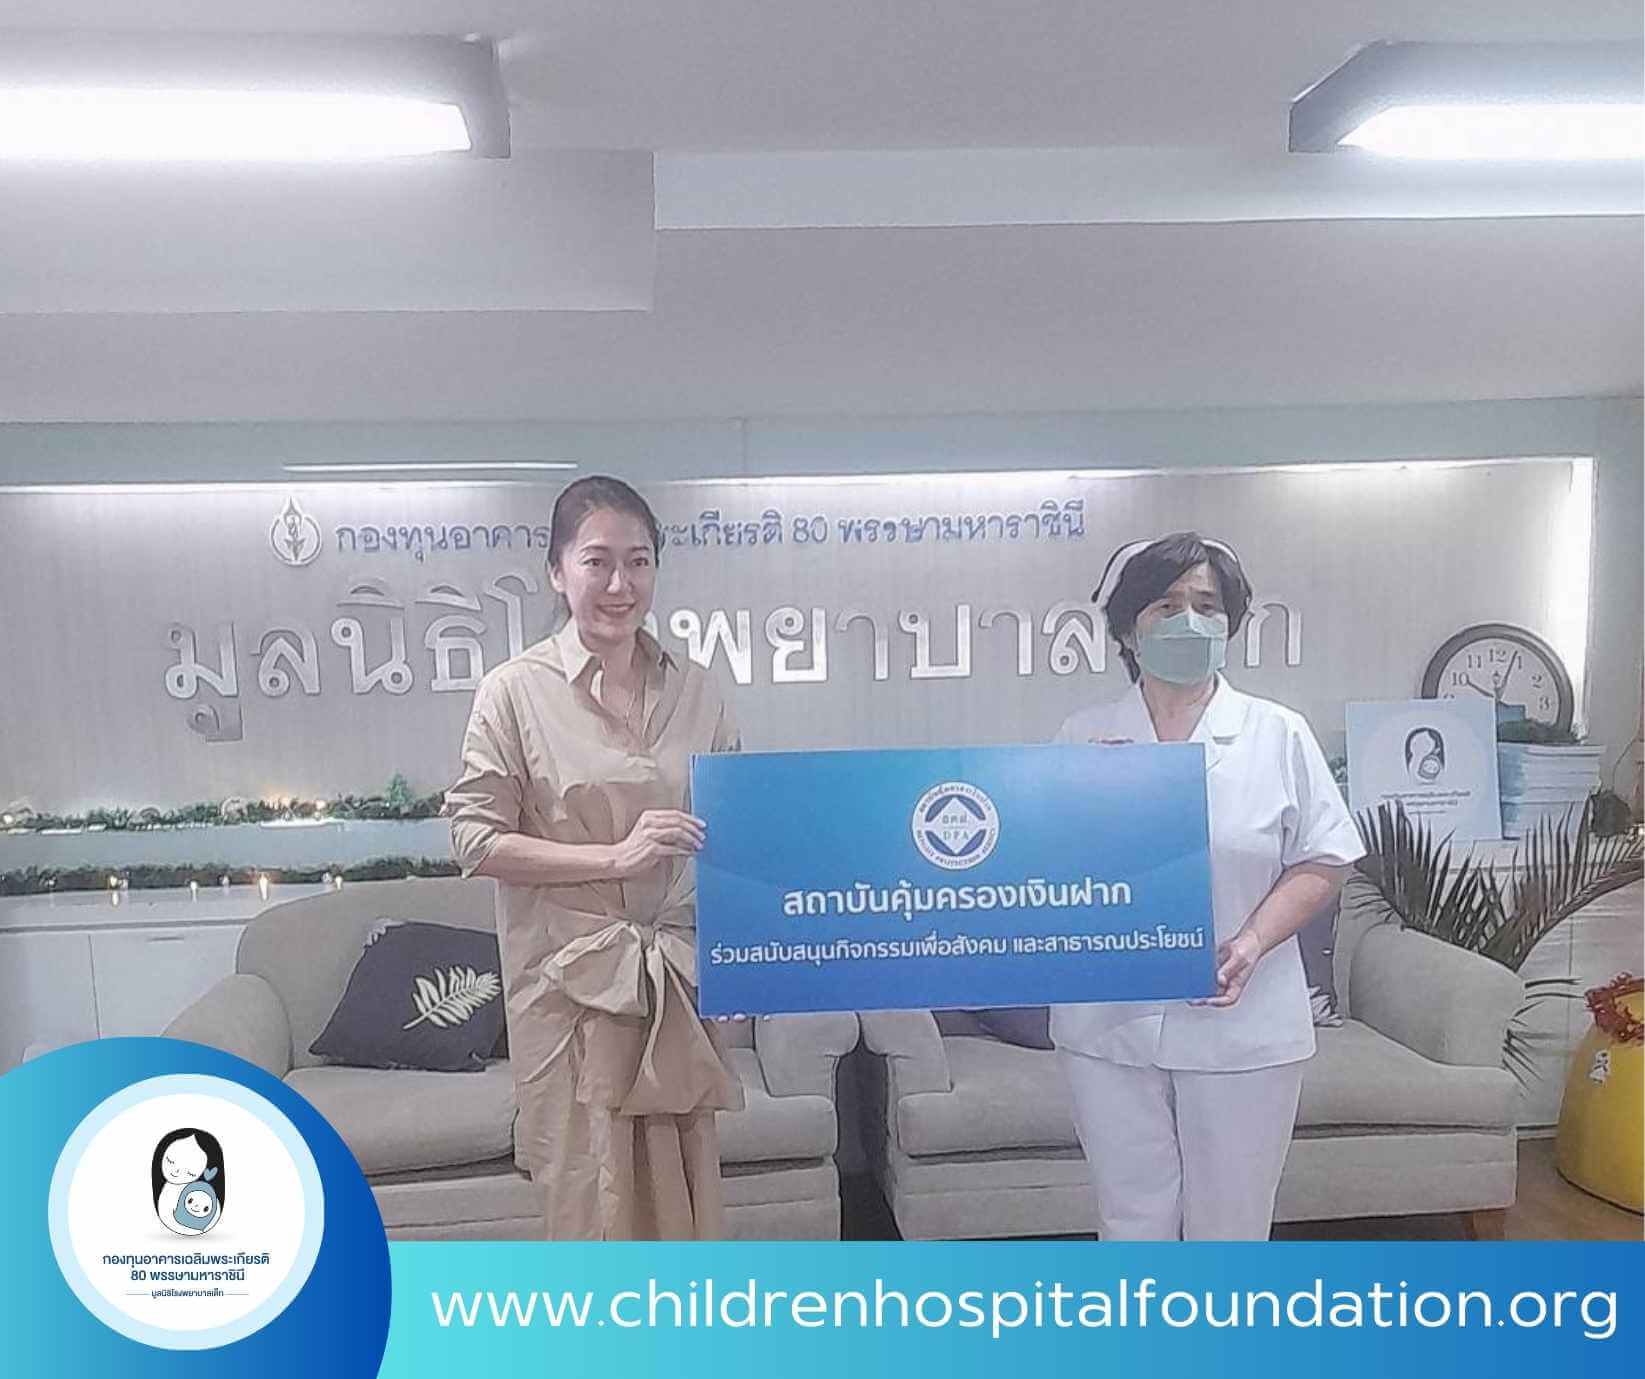 สถาบันคุ้มครองเงินฝาก ร่วมสนับสนุนบริจาคเพื่อเด็กป่วย โรงพยาบาลเด็ก